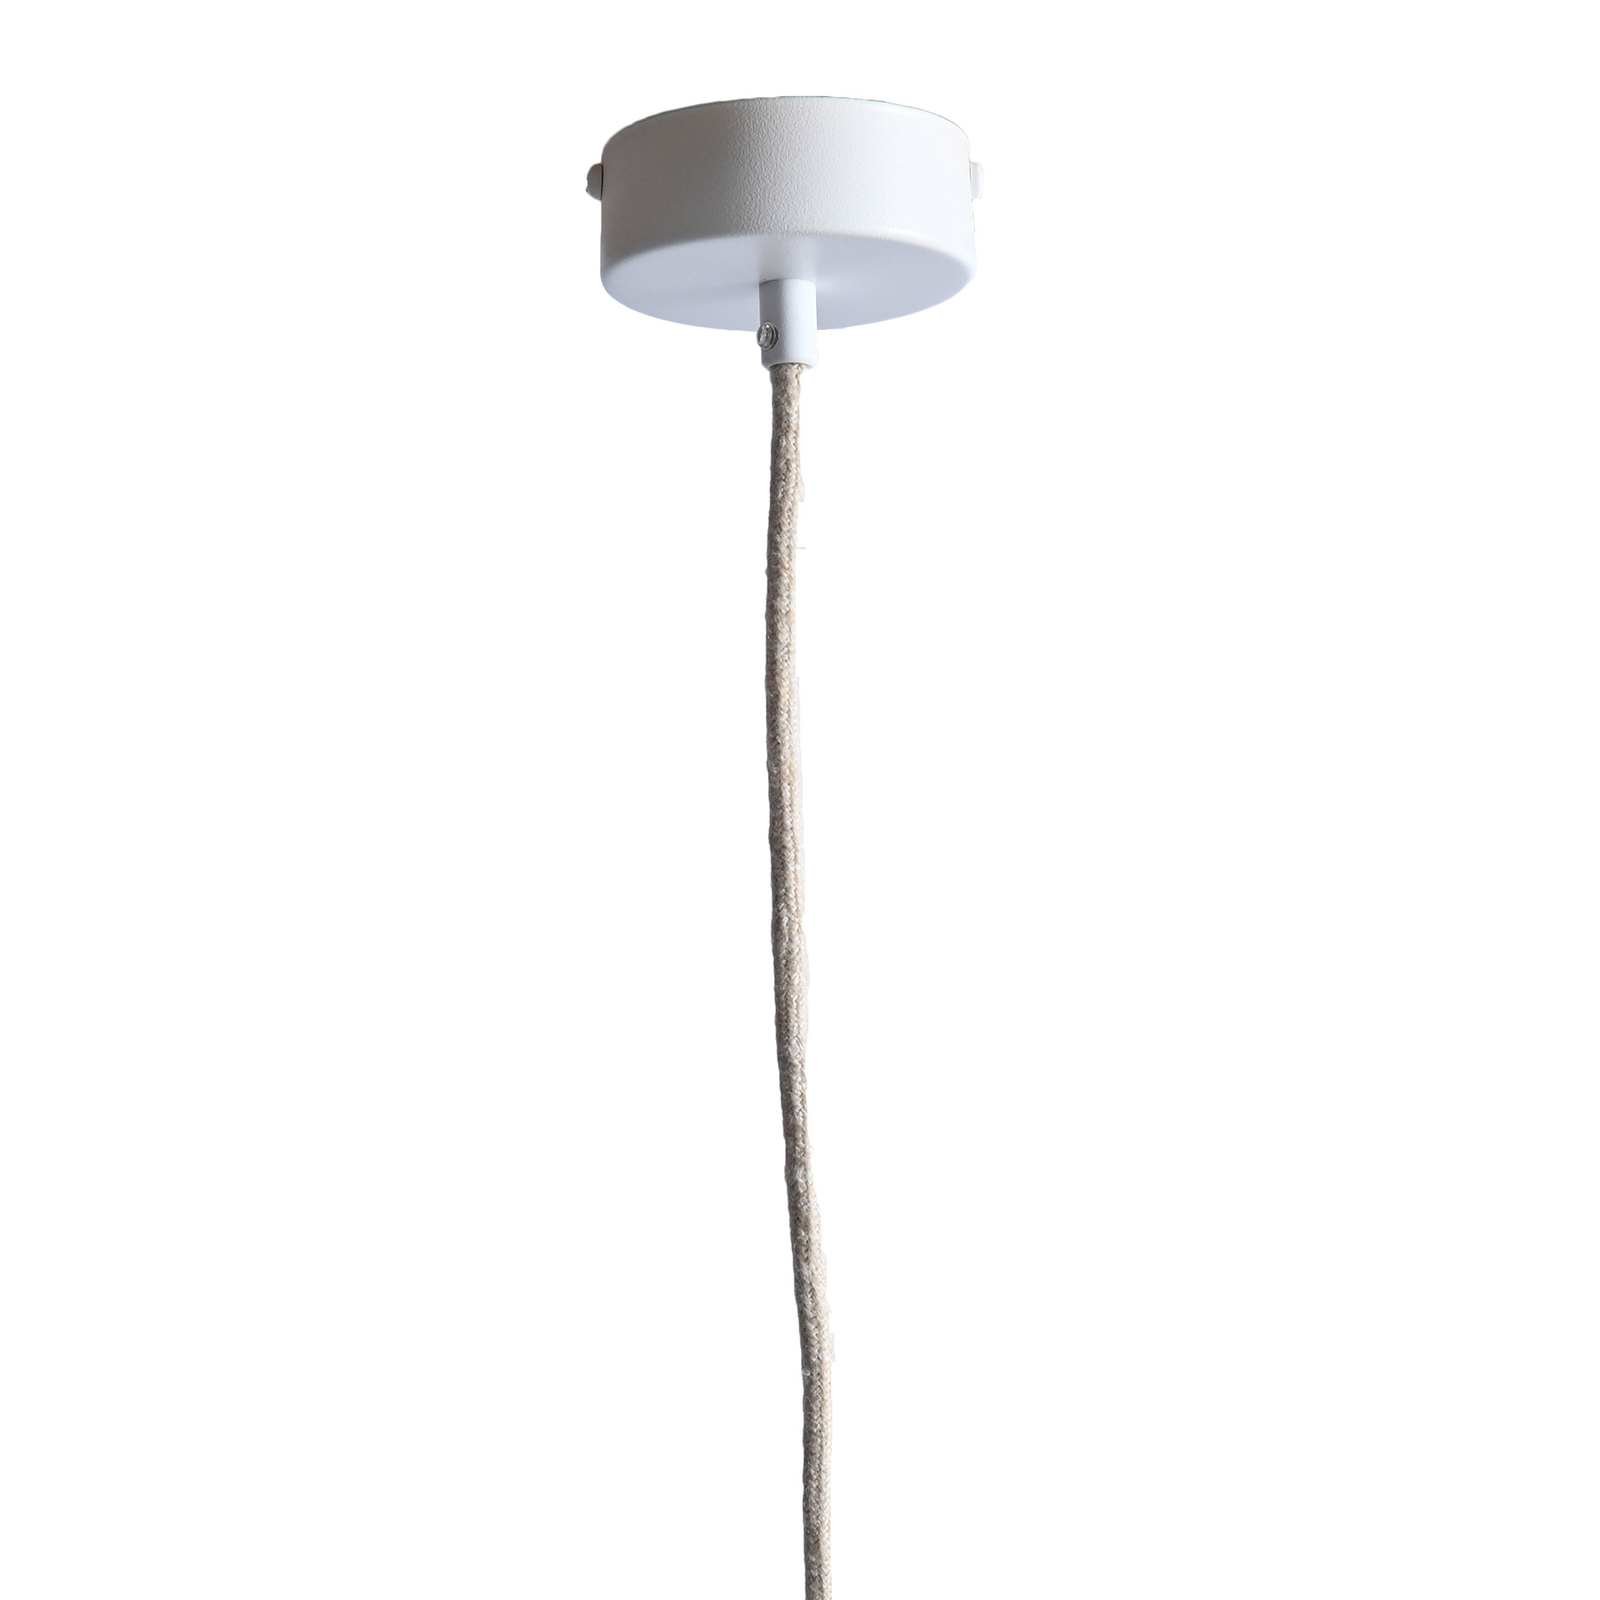 LeuchtNatur Nux hanglamp, olijf/wit